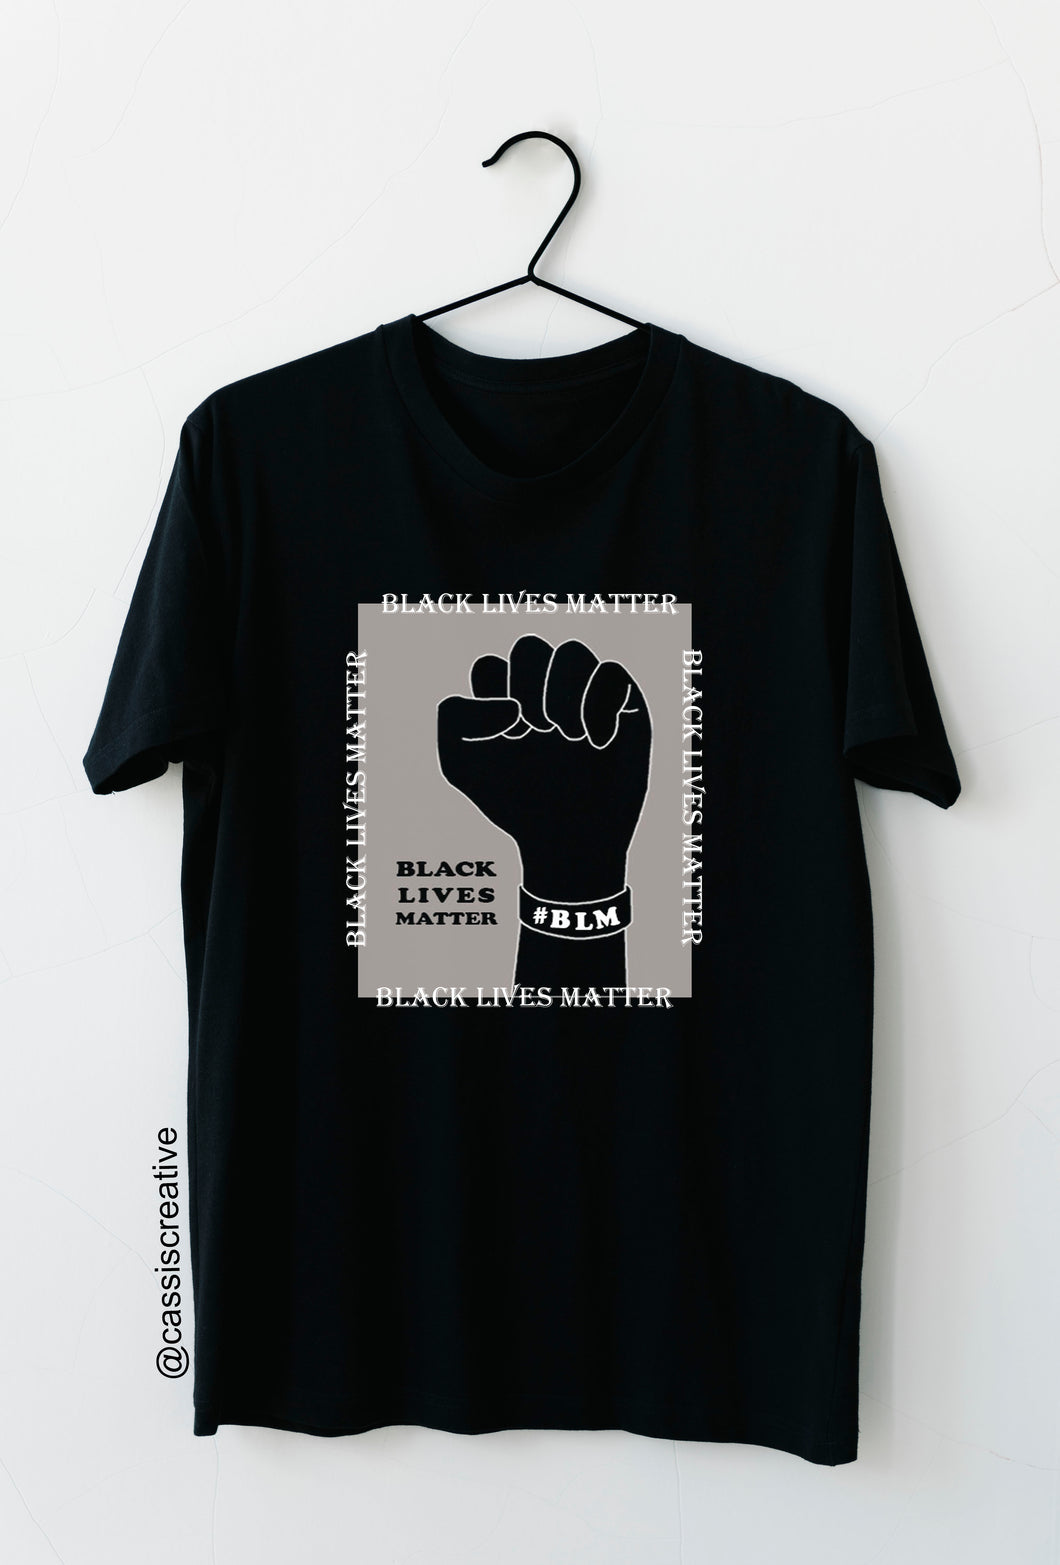 Black Lives Matter T -Shirt for Men and Women